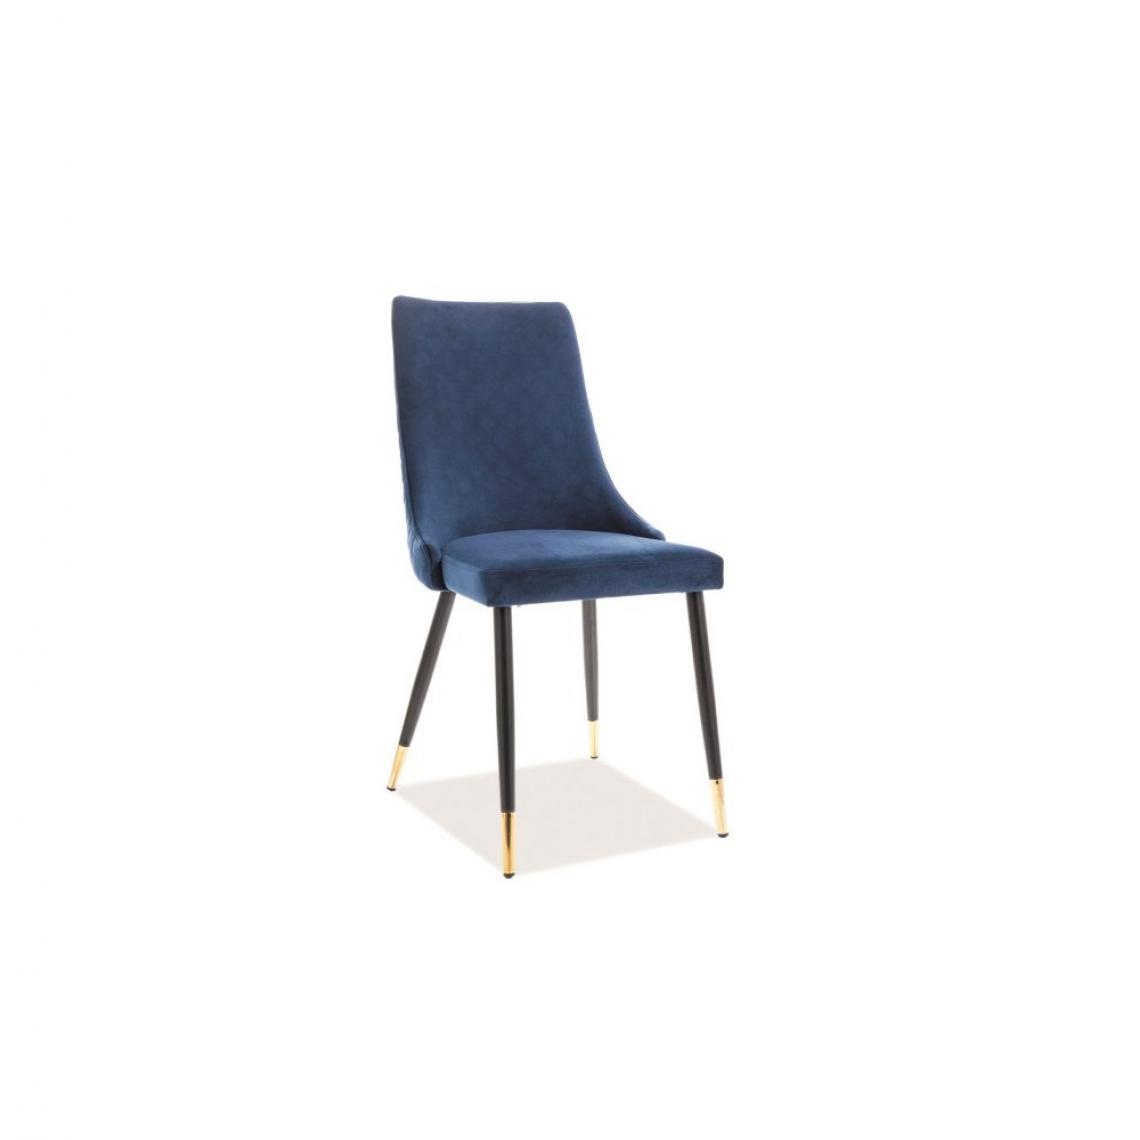 Ac-Deco - Chaise en velours - Piano - L 45 cm x l 44 cm x H 92 cm - Bleu - Chaises